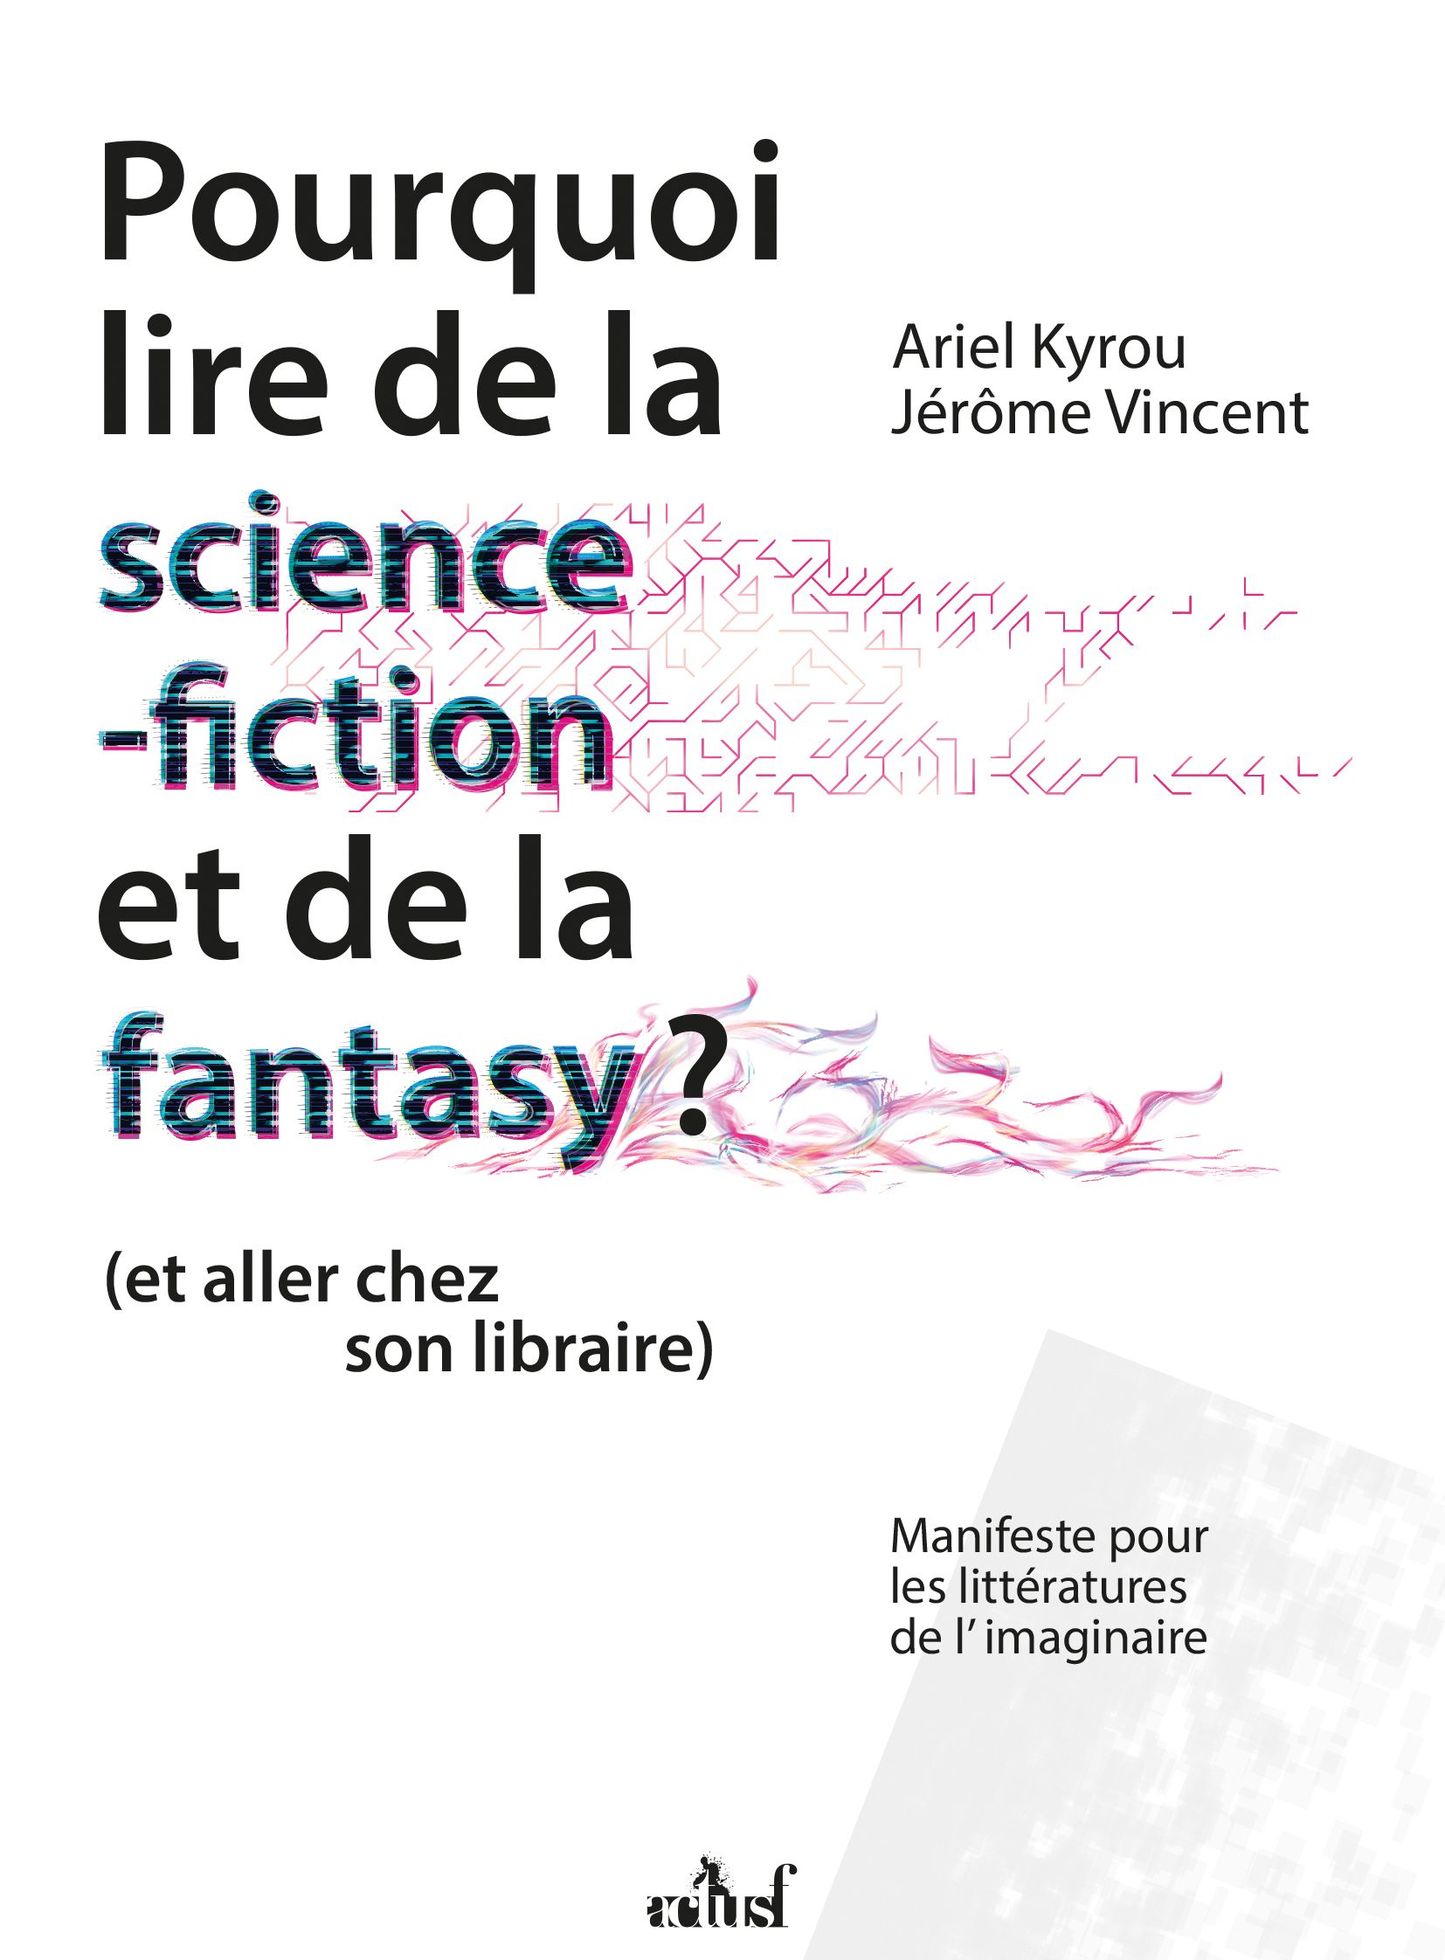 Pourquoi lire de la science-fiction et de la fantasy ? Episode 7 : Alain Damasio, son rapport à la science-fiction et son regard sur sa bibliographie.